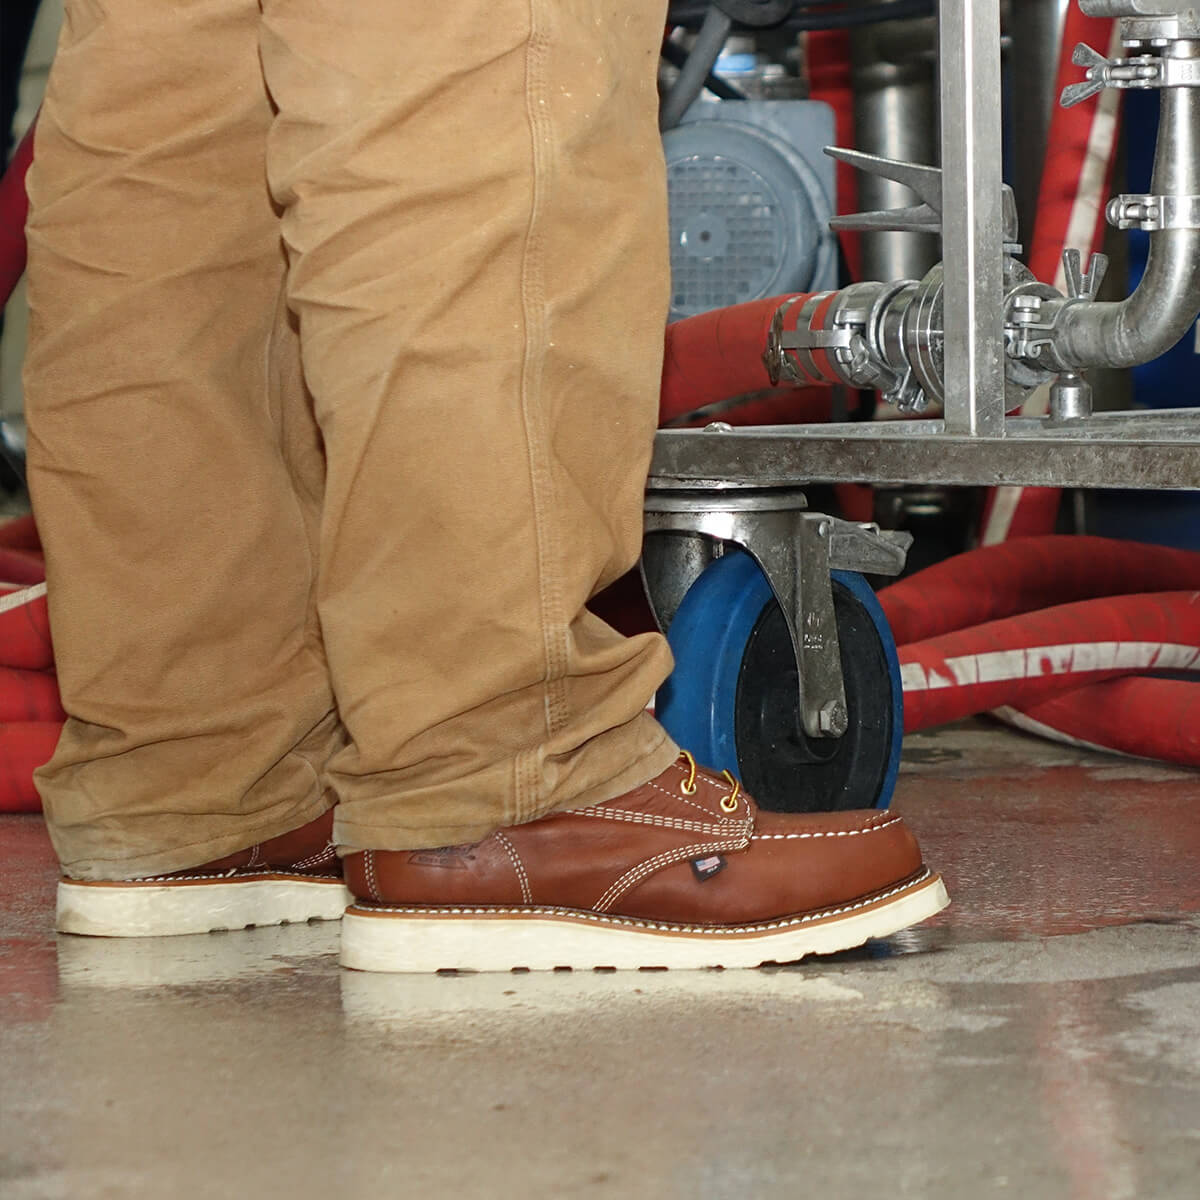 thorogood moc toe safety boots